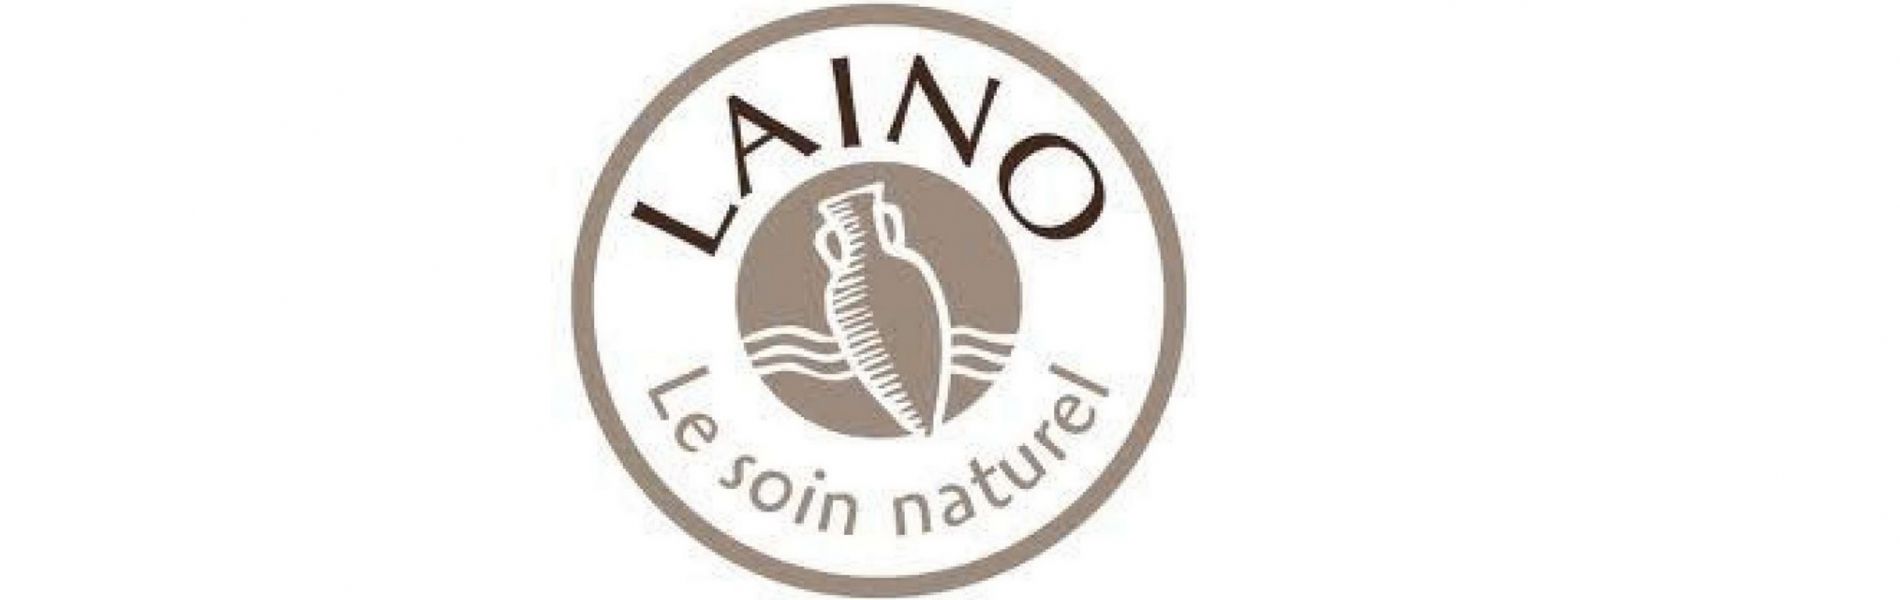 https://www.soopur.fr/media/category/img/zoom/laino-logo.jpg